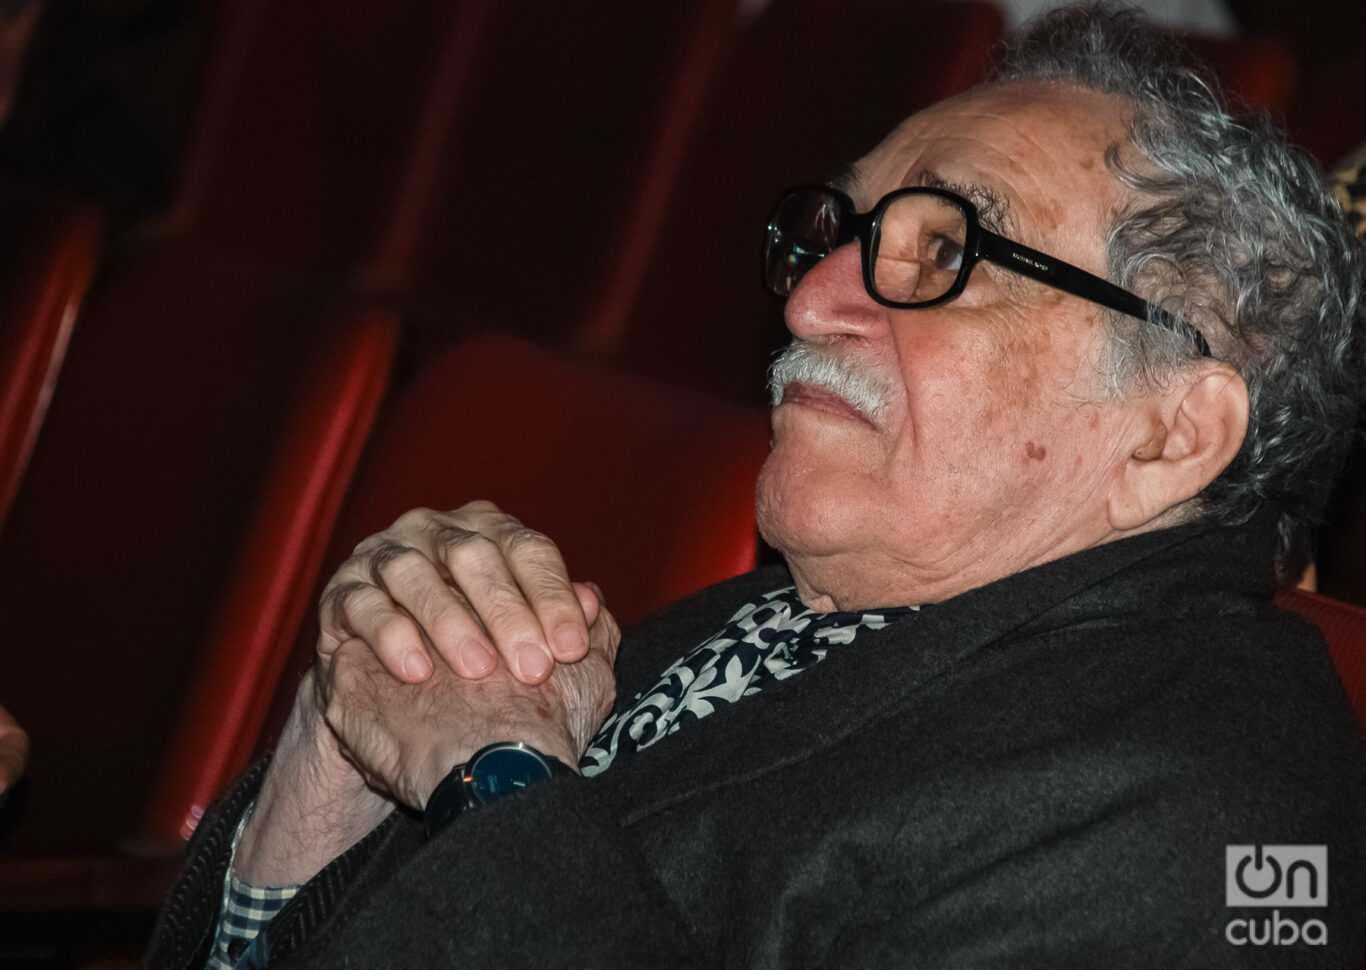 Gabriel García Márquez en el Karl Marx, durante el Festival Internacional del Nuevo Cine Latinoamericano de diciembre de 2009. Foto: Kaloian.